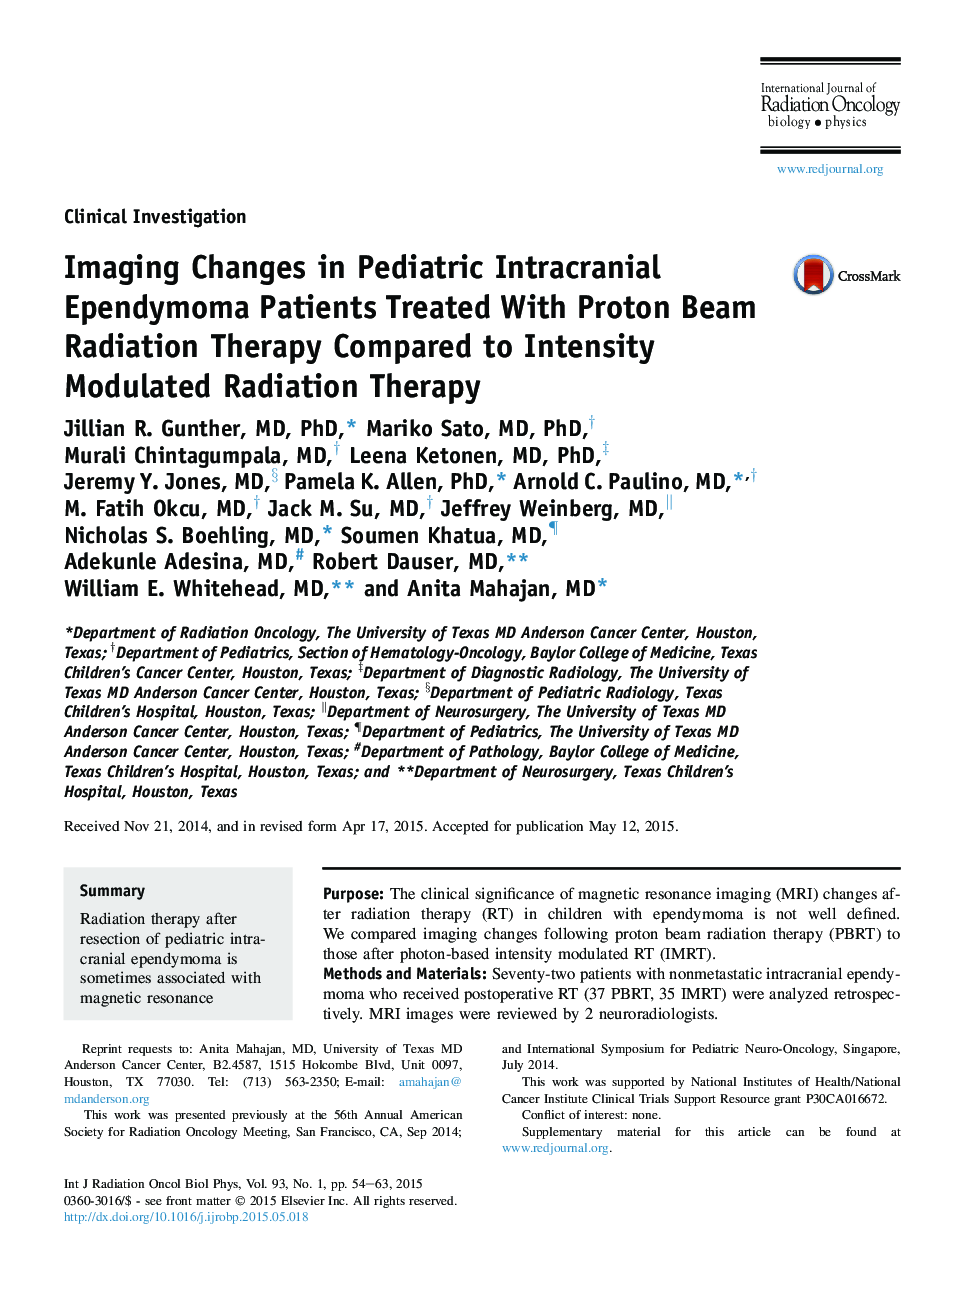 تغییرات تصویربرداری در بیماران مبتلا به ادریموما در داخل جمجمه کودکان مبتلا به پرتو درمانی در مقایسه با روش پرتوی مدولاسیون شدت 